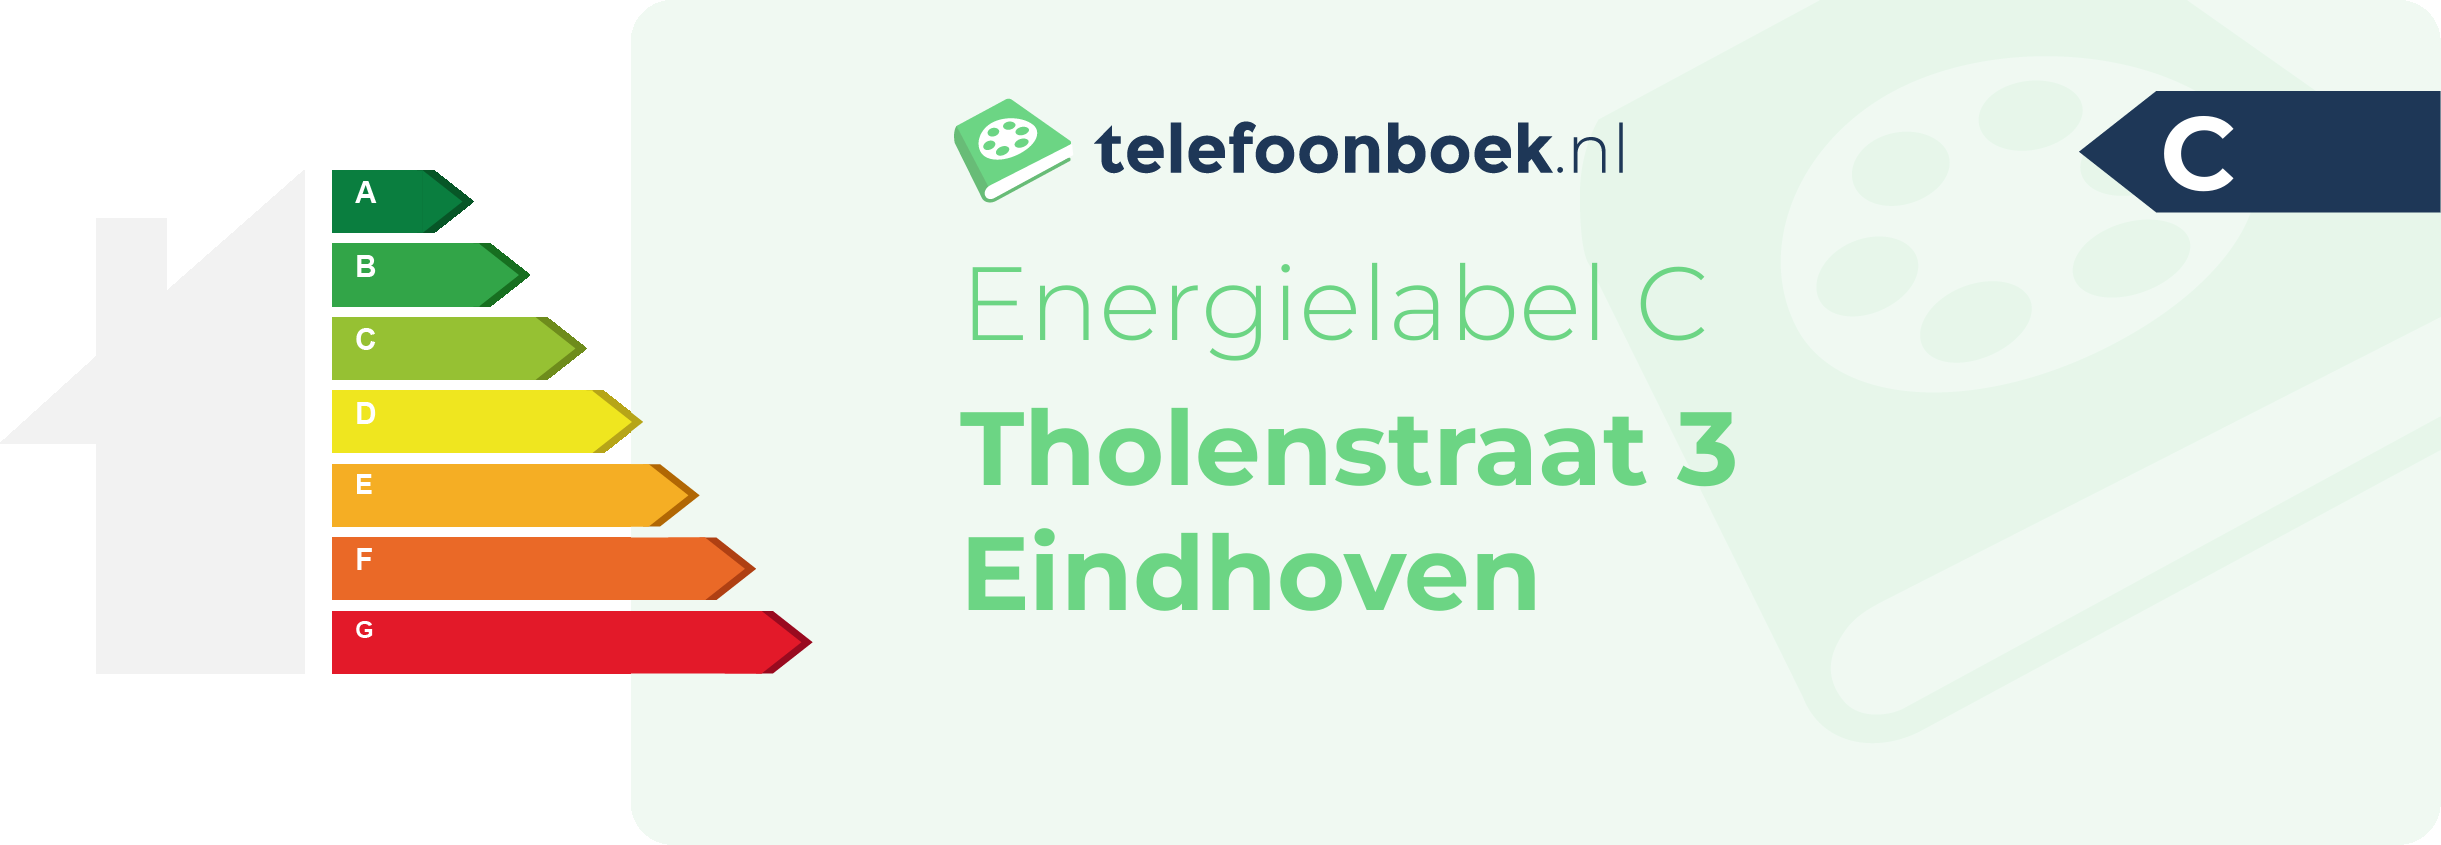 Energielabel Tholenstraat 3 Eindhoven